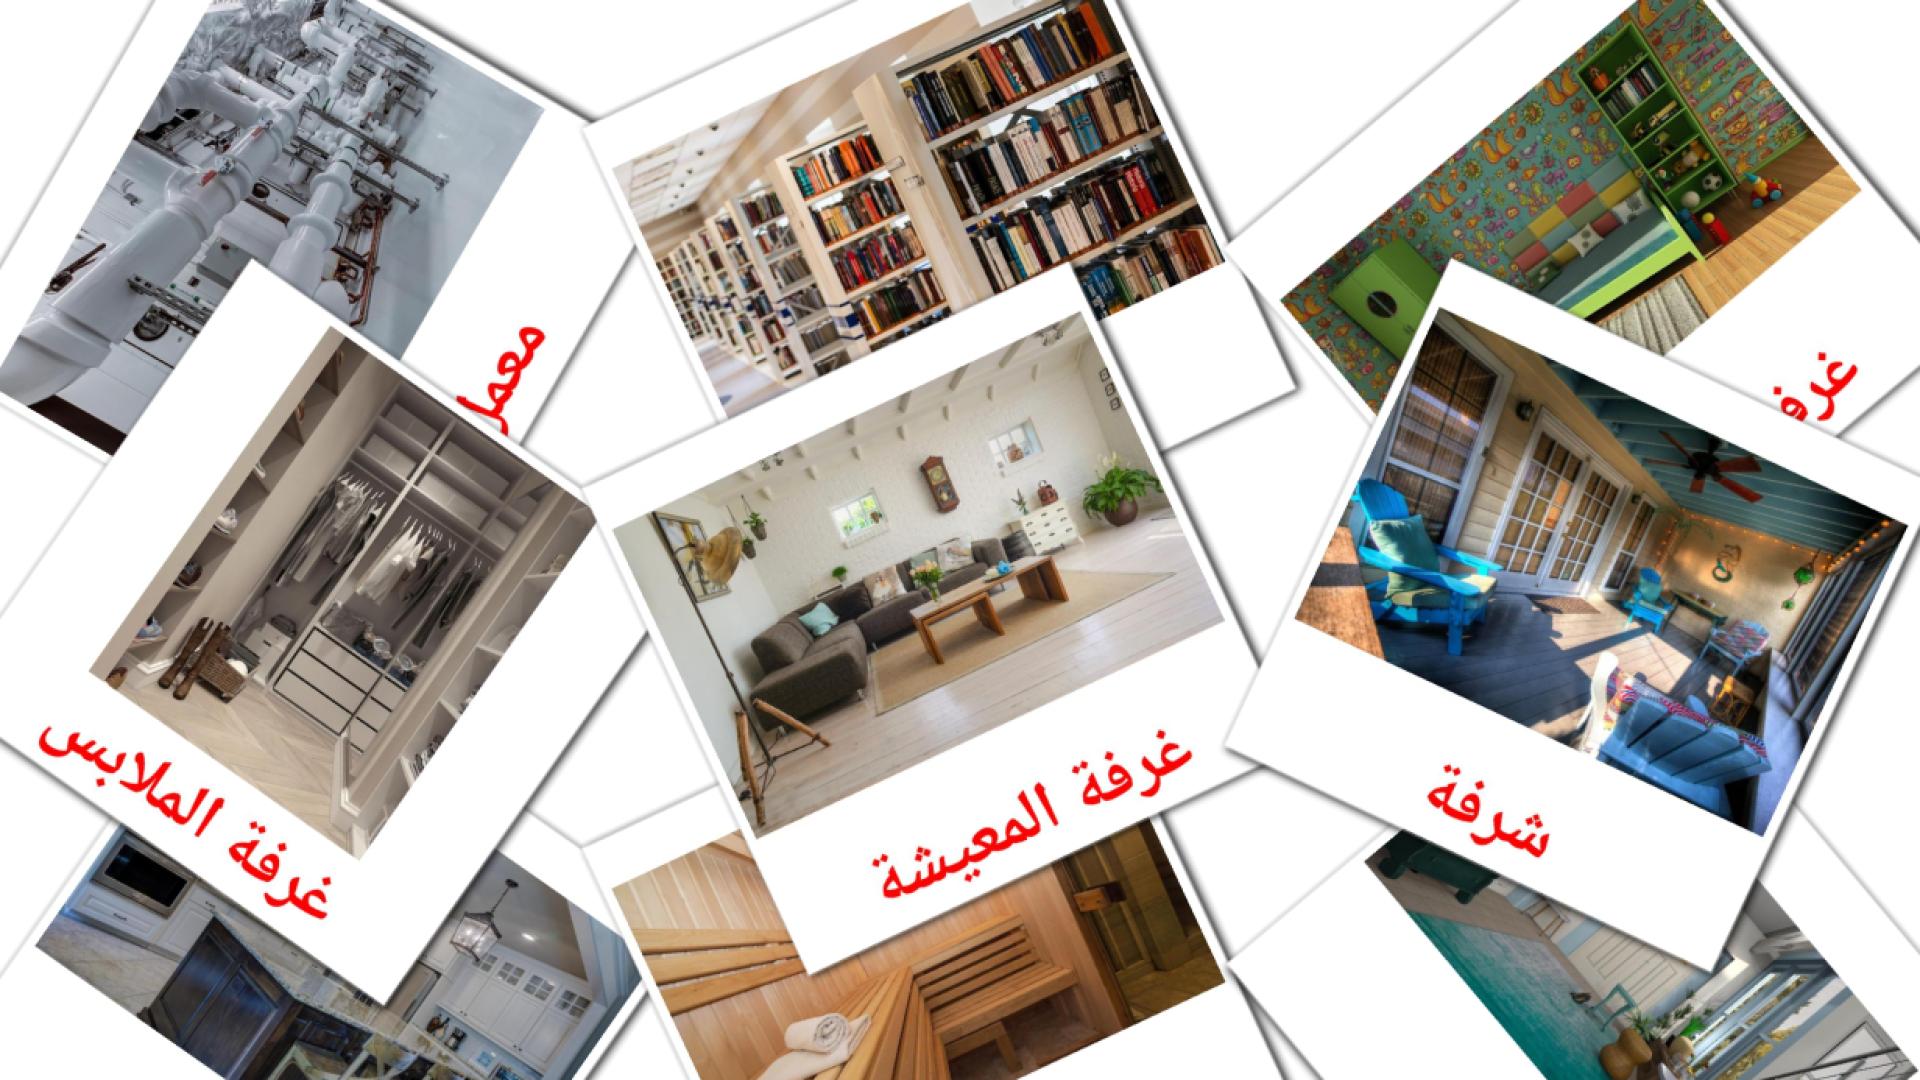 Habitaciones  - tarjetas de vocabulario en árabe